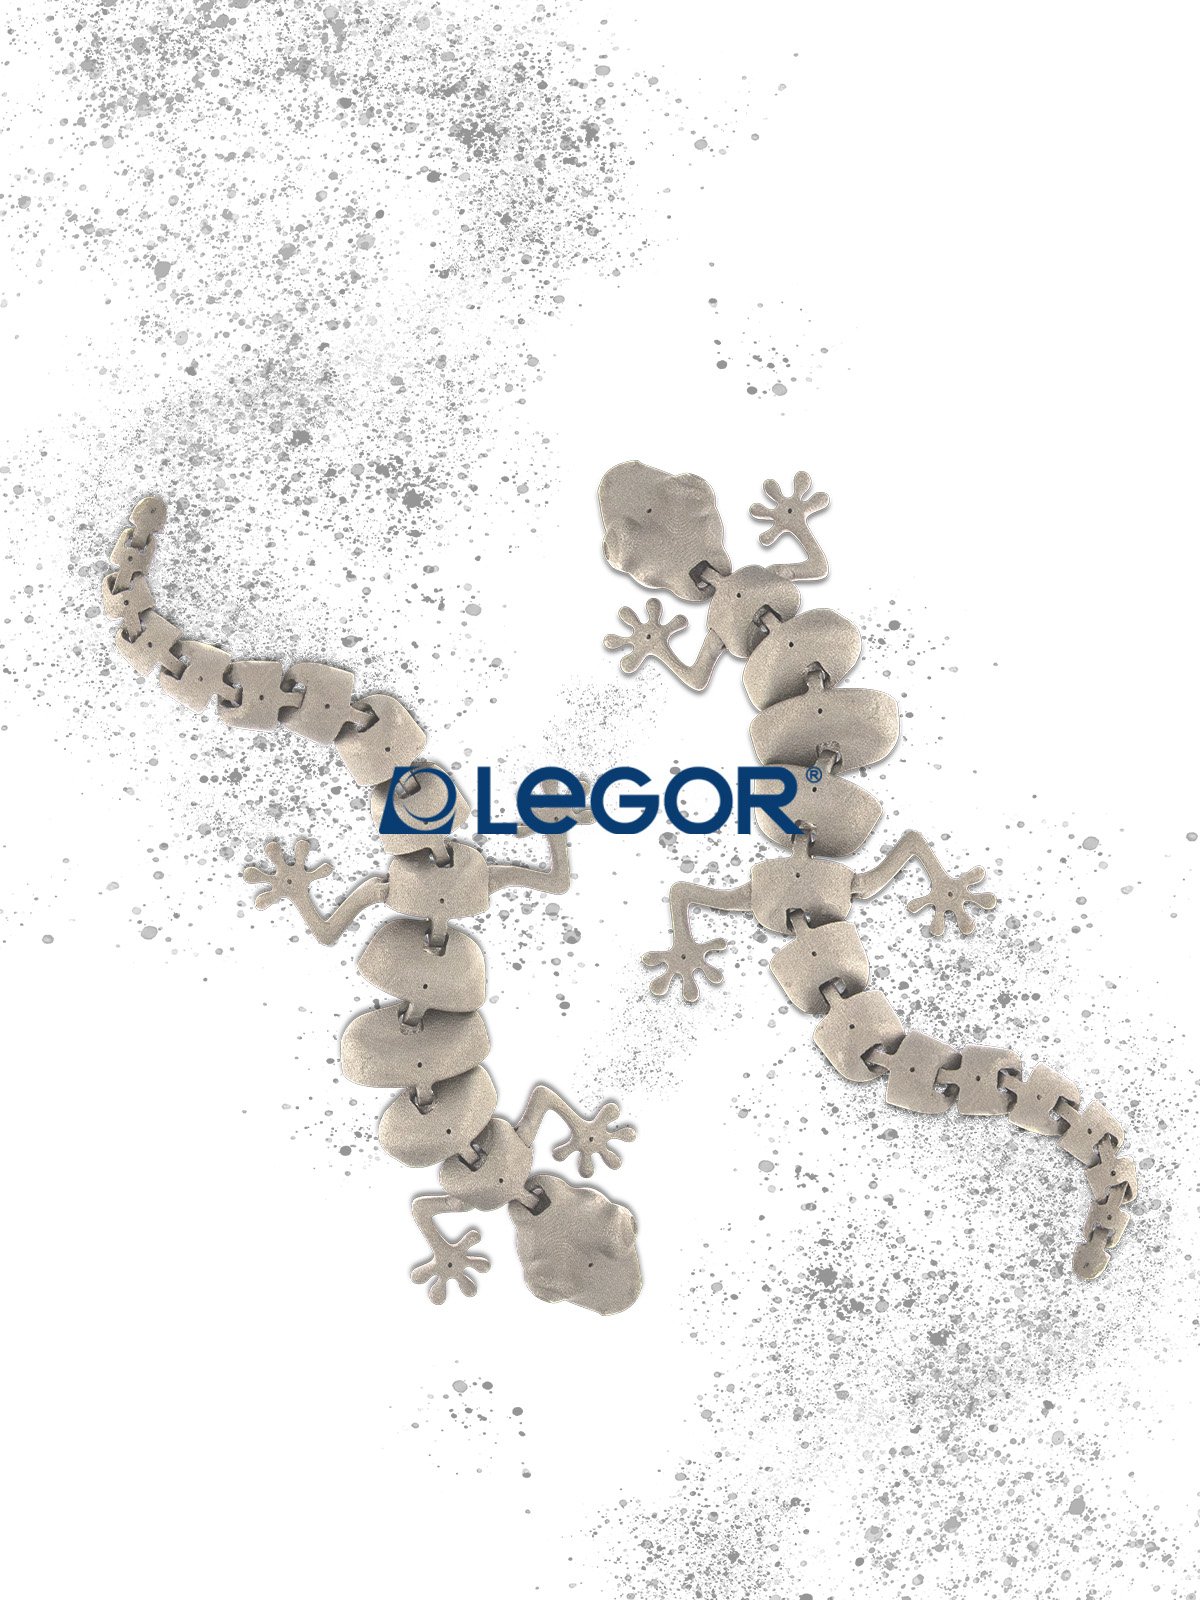 Legor 3D Metal Hub: il centro per l’innovazione dedicato alla Stampa 3D per l'industria del lusso